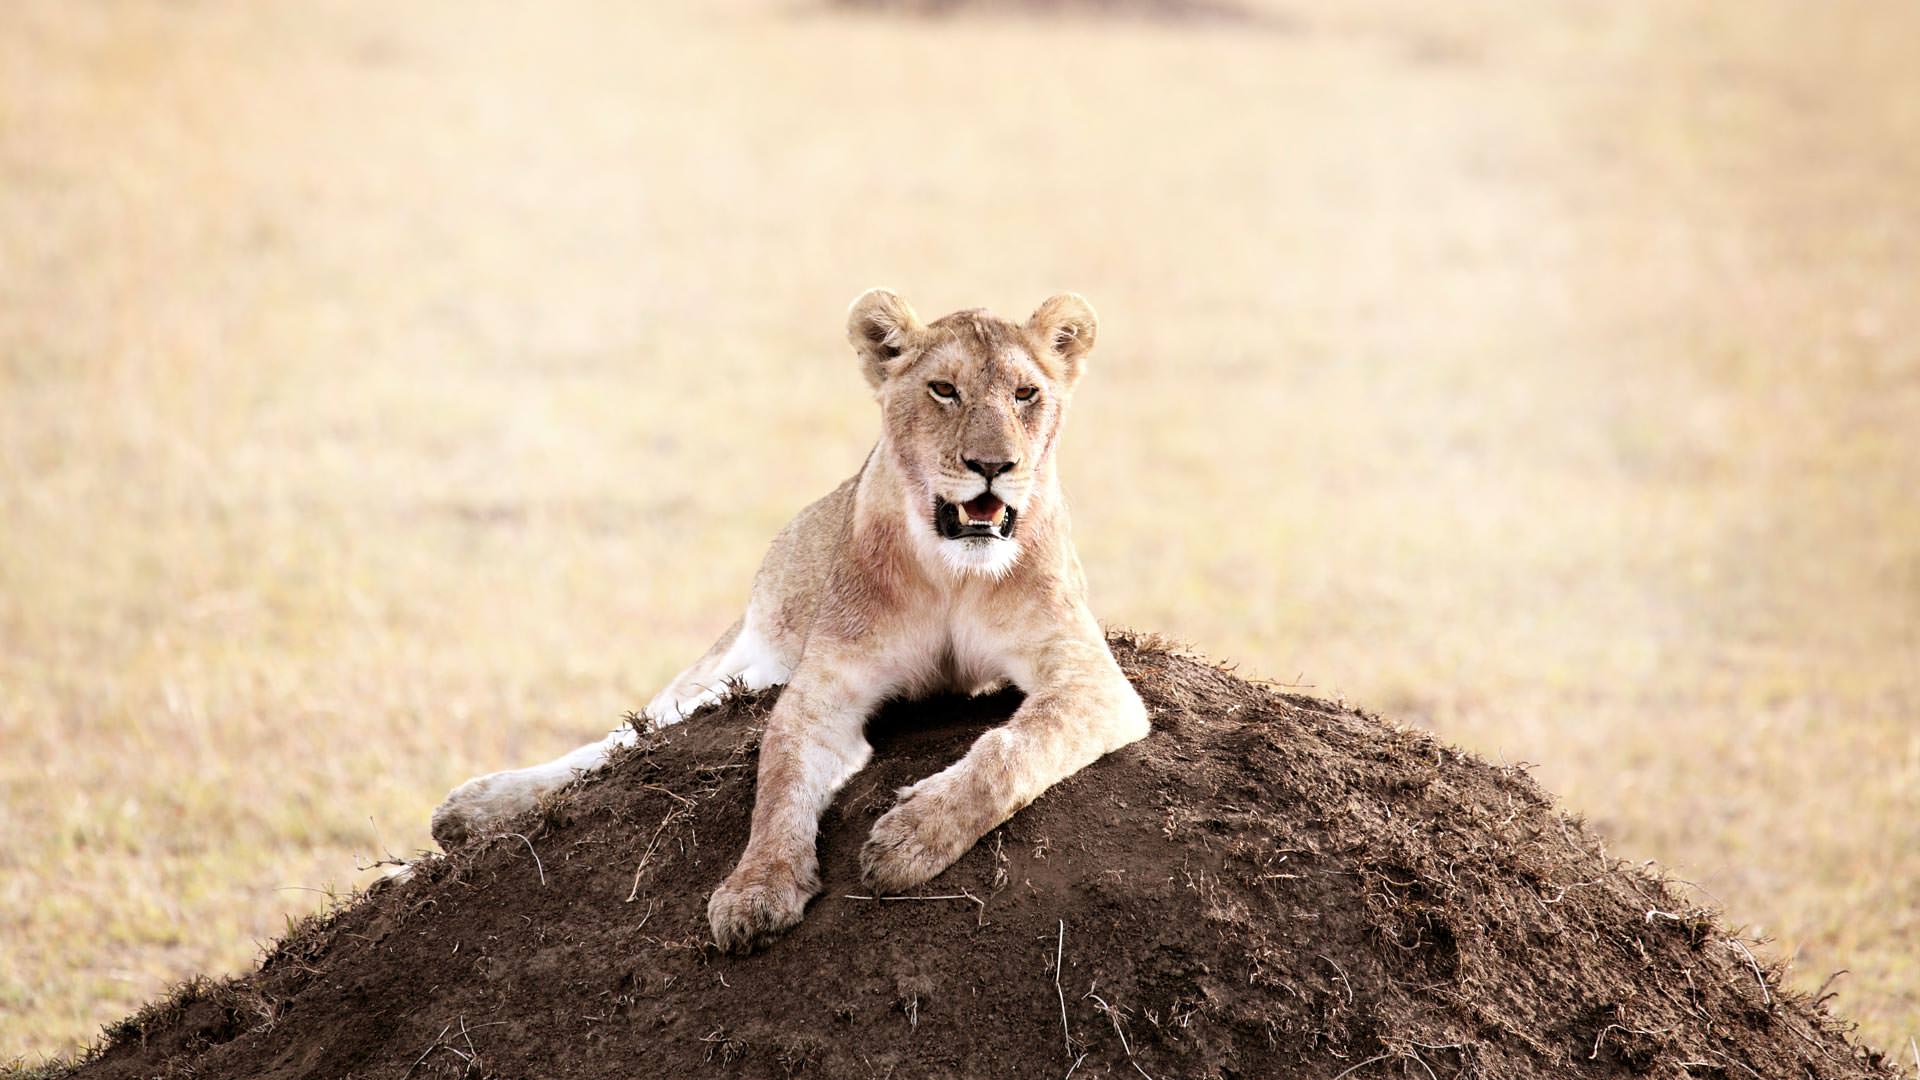 Lion on termite mound